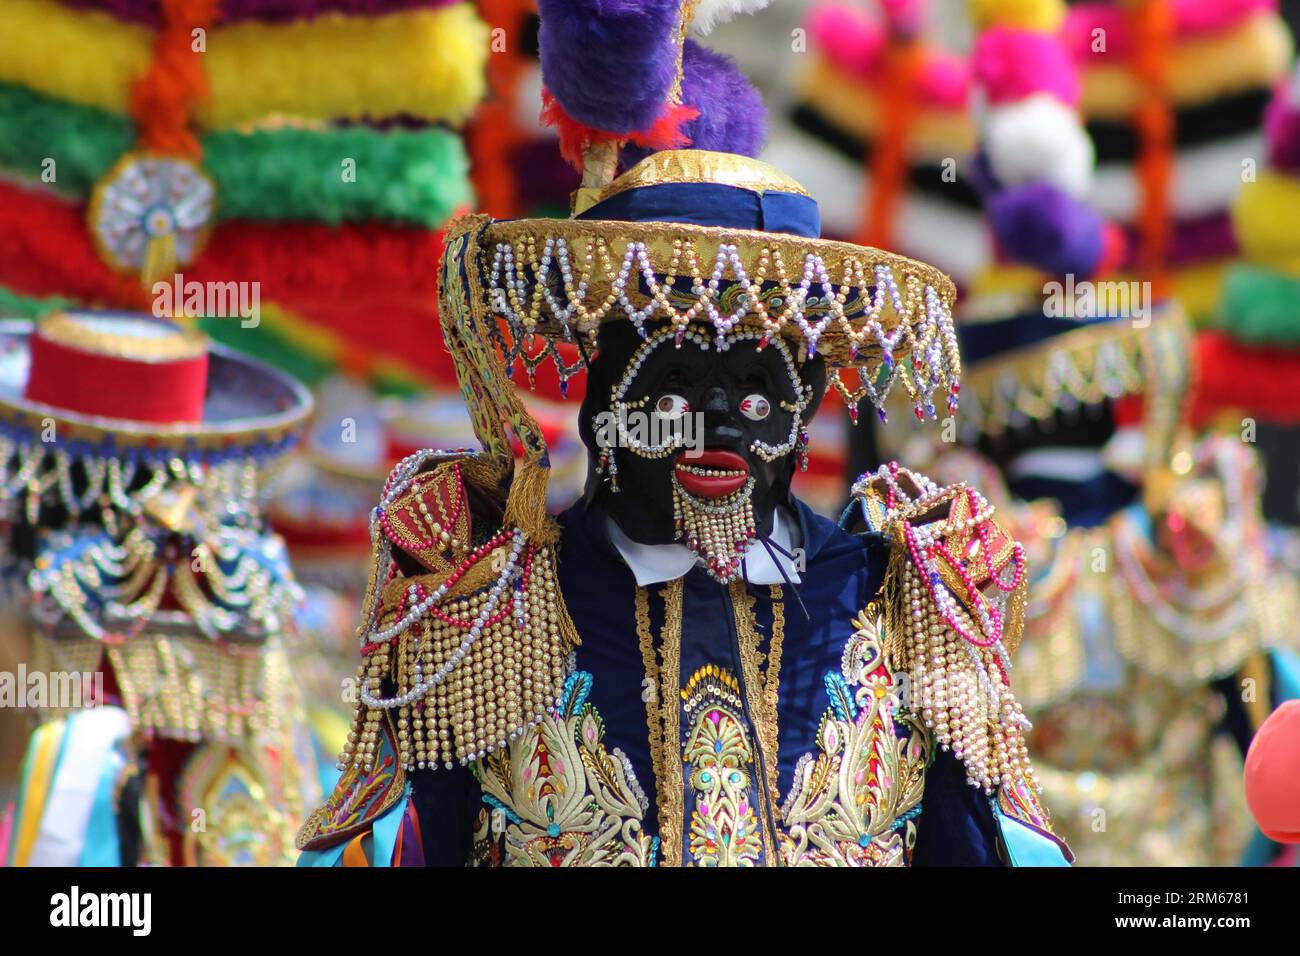 Bildnummer : 60831559 Datum : 14.12.2013 Copyright : imago/Xinhua des danseurs habillés en Truco y la Dama , se produisent dans la cour d'honneur du Palais du Gouvernement, à Lima, capitale du Pérou, le 14 décembre 2013. La danse de Los Negritos ou Cofradia de los Negritos , danse traditionnelle de la période de Noël dans la ville de Huanuco, a été déclarée patrimoine culturel en août 2005. (Xinhua/Luis Camacho) (rt) PÉROU-LIMA-CULTURE-DANCE PUBLICATIONxNOTxINxCHN Gesellschaft Kultur Tradition Tanz folklore xdp x0x 2013 quer premiumd Banque D'Images